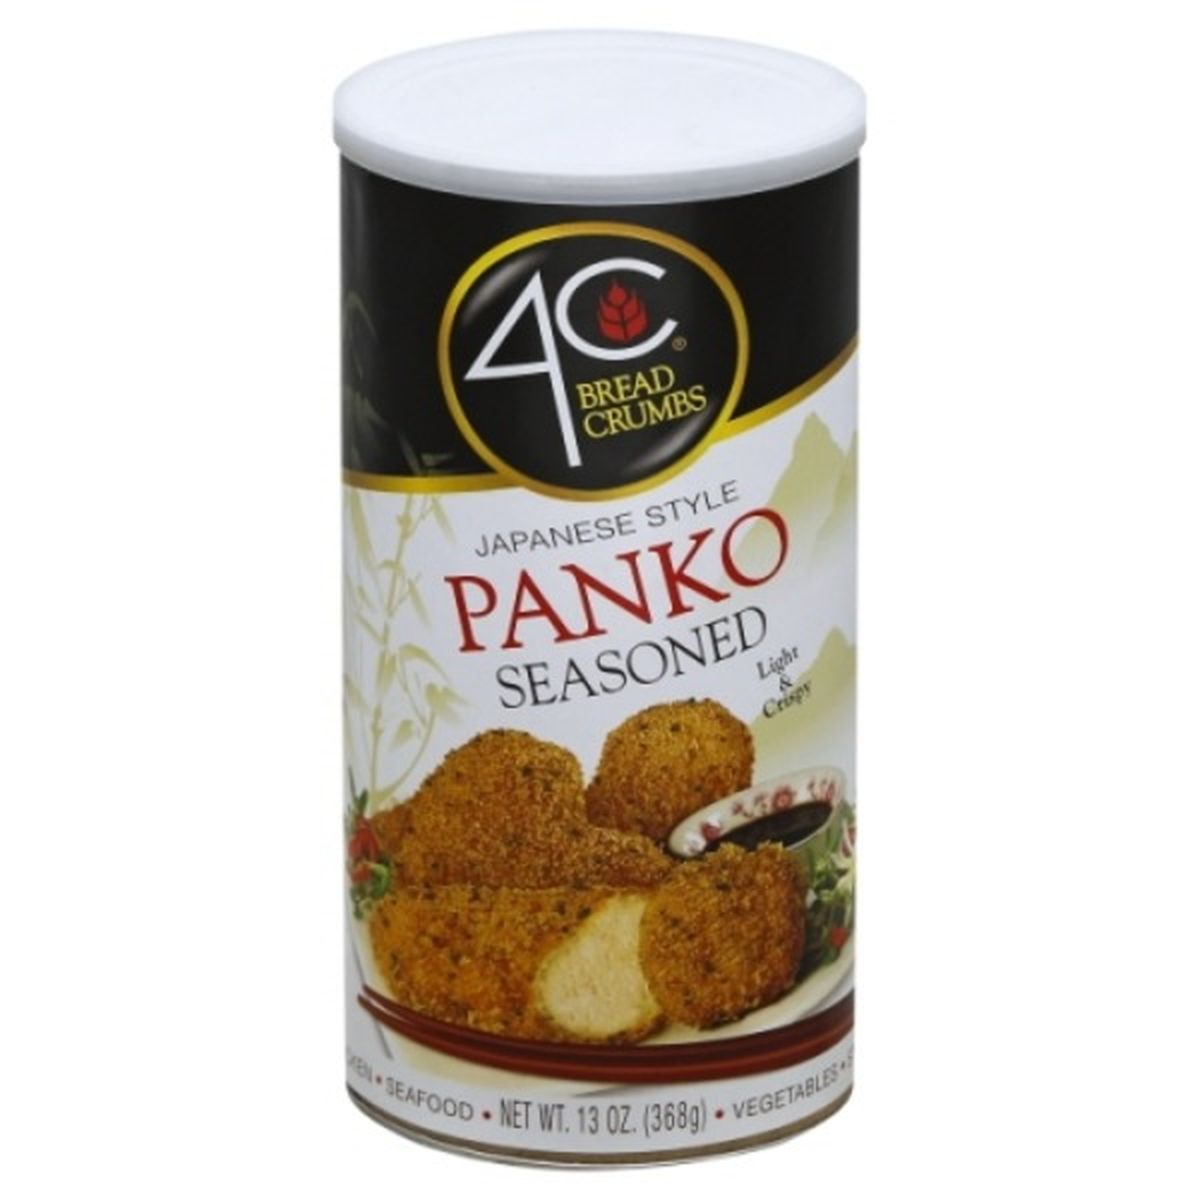 Calories in 4C Foods Bread Crumbs, Japanese Style Panko, Seasoned